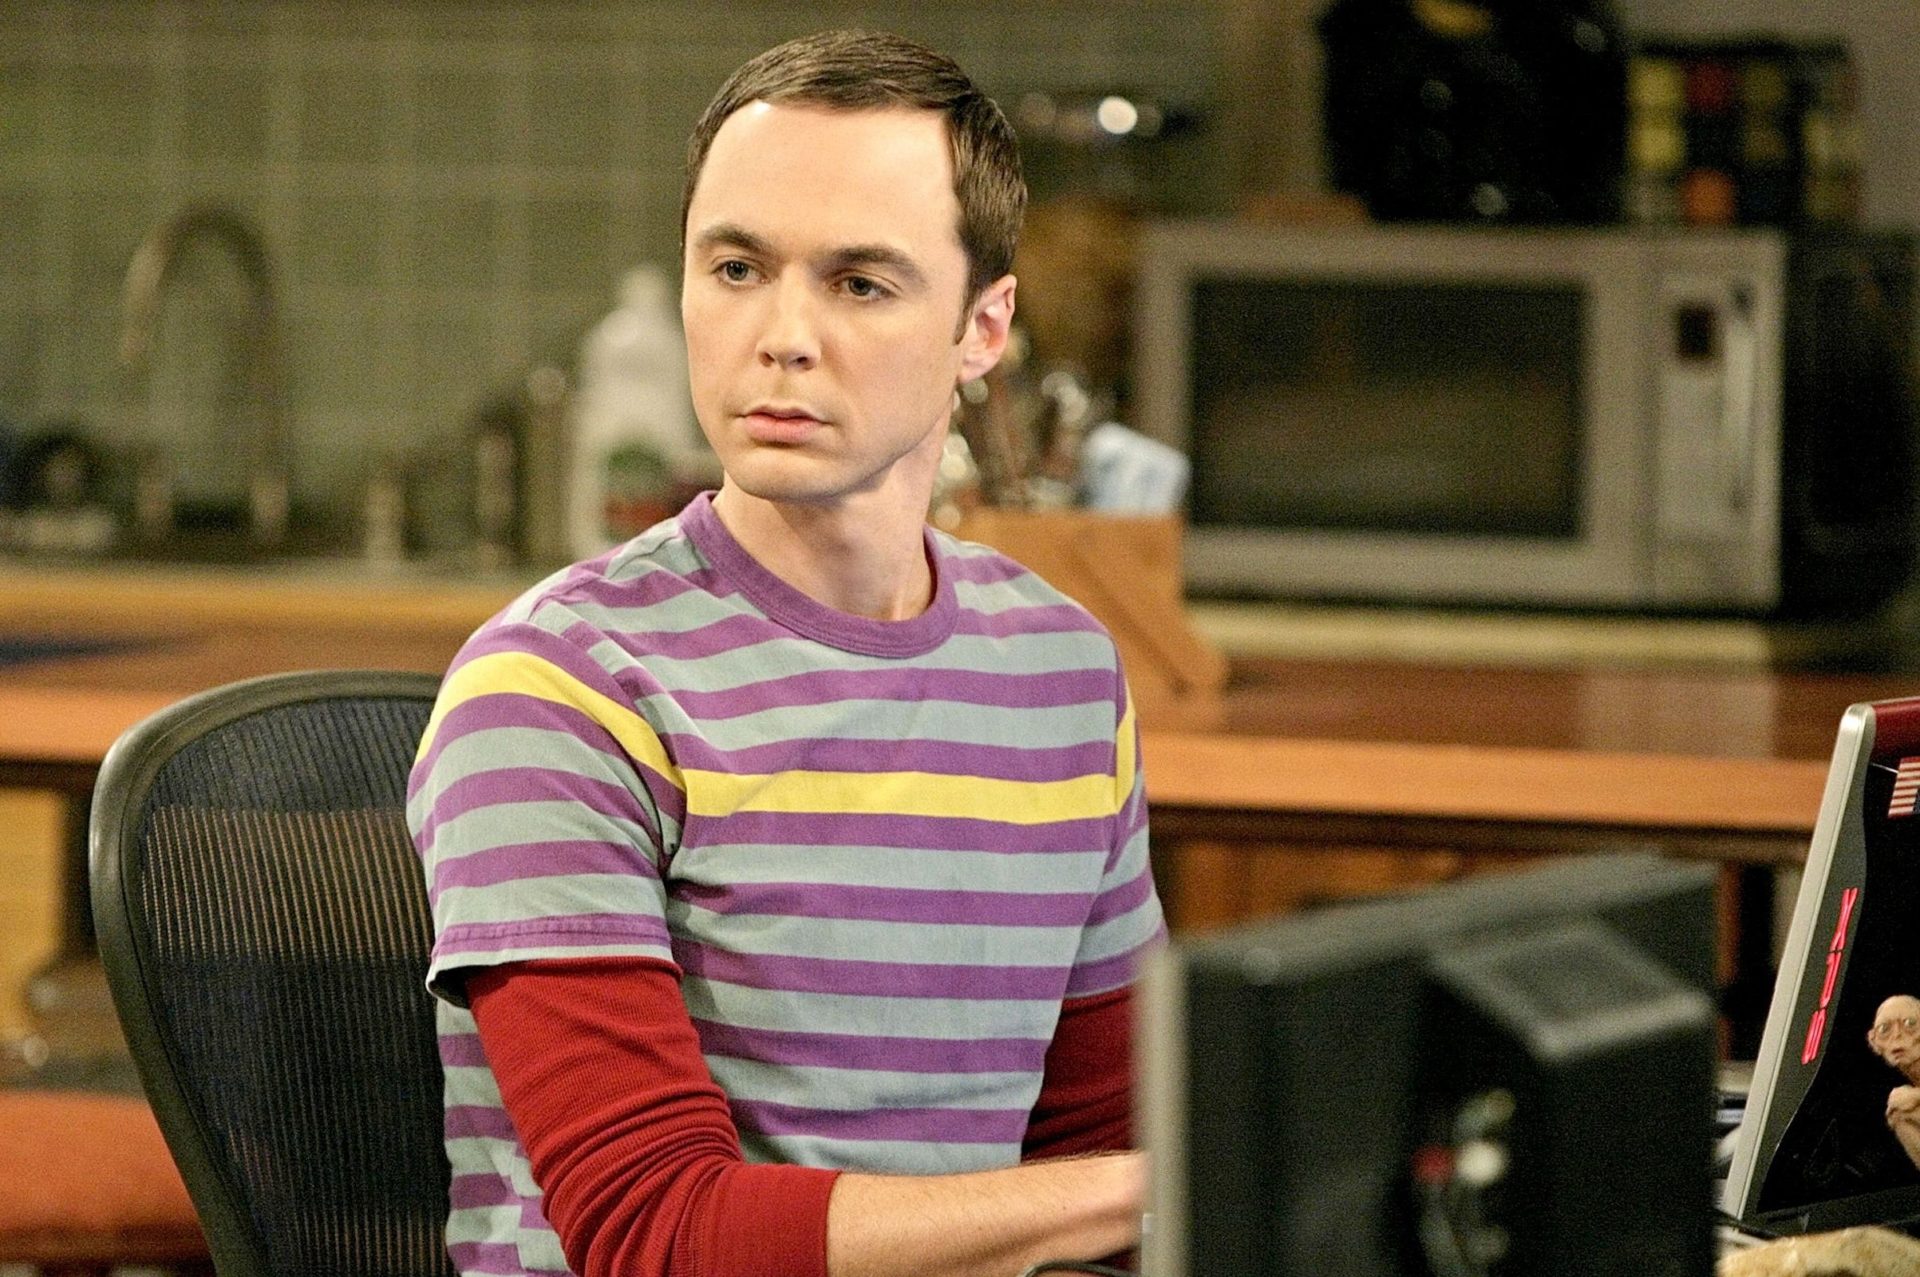 Erro de The Big Bang Theory mostra triste verdade sobre protagonistas